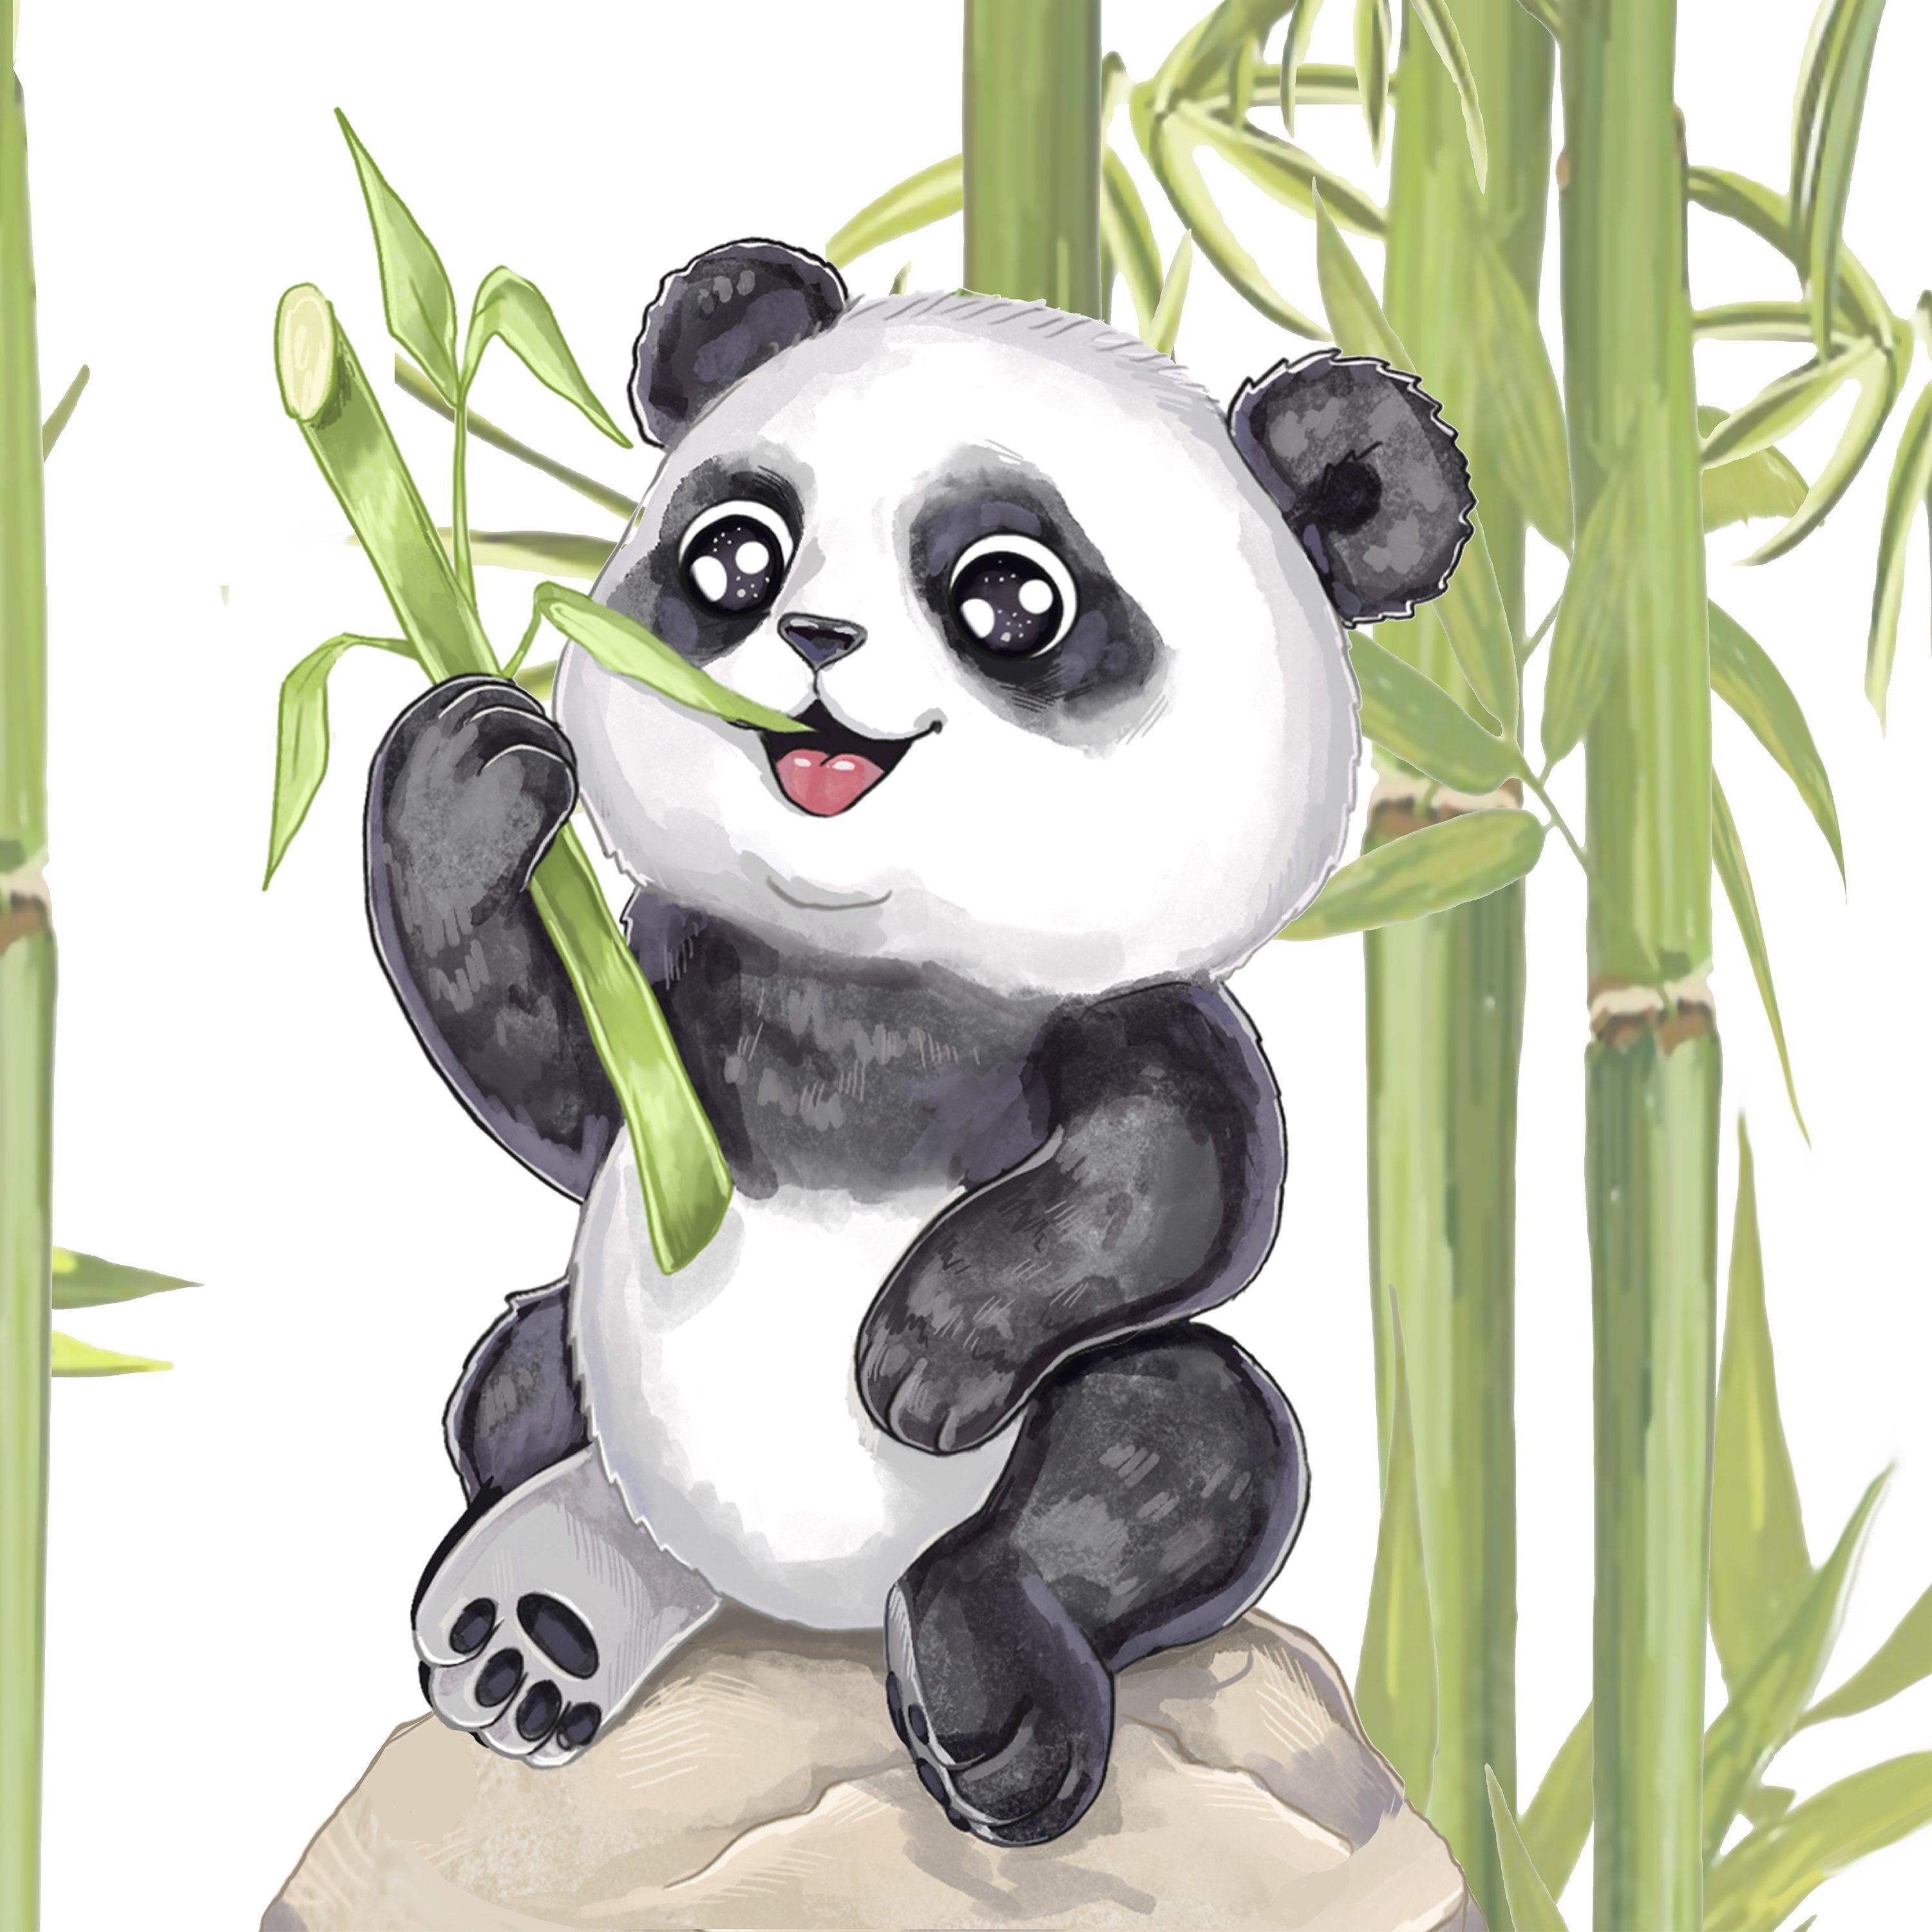 Kinderbettwäsche Panda als Babybettwäsche 100x135 oder Kinderbettwäsche  135x200, Koru Kids, 100% Baumwolle (Renforc), 2 teilig, Kuschelig weiche  Kinderbettwäsche mit wirklich tollem Panda Motiv